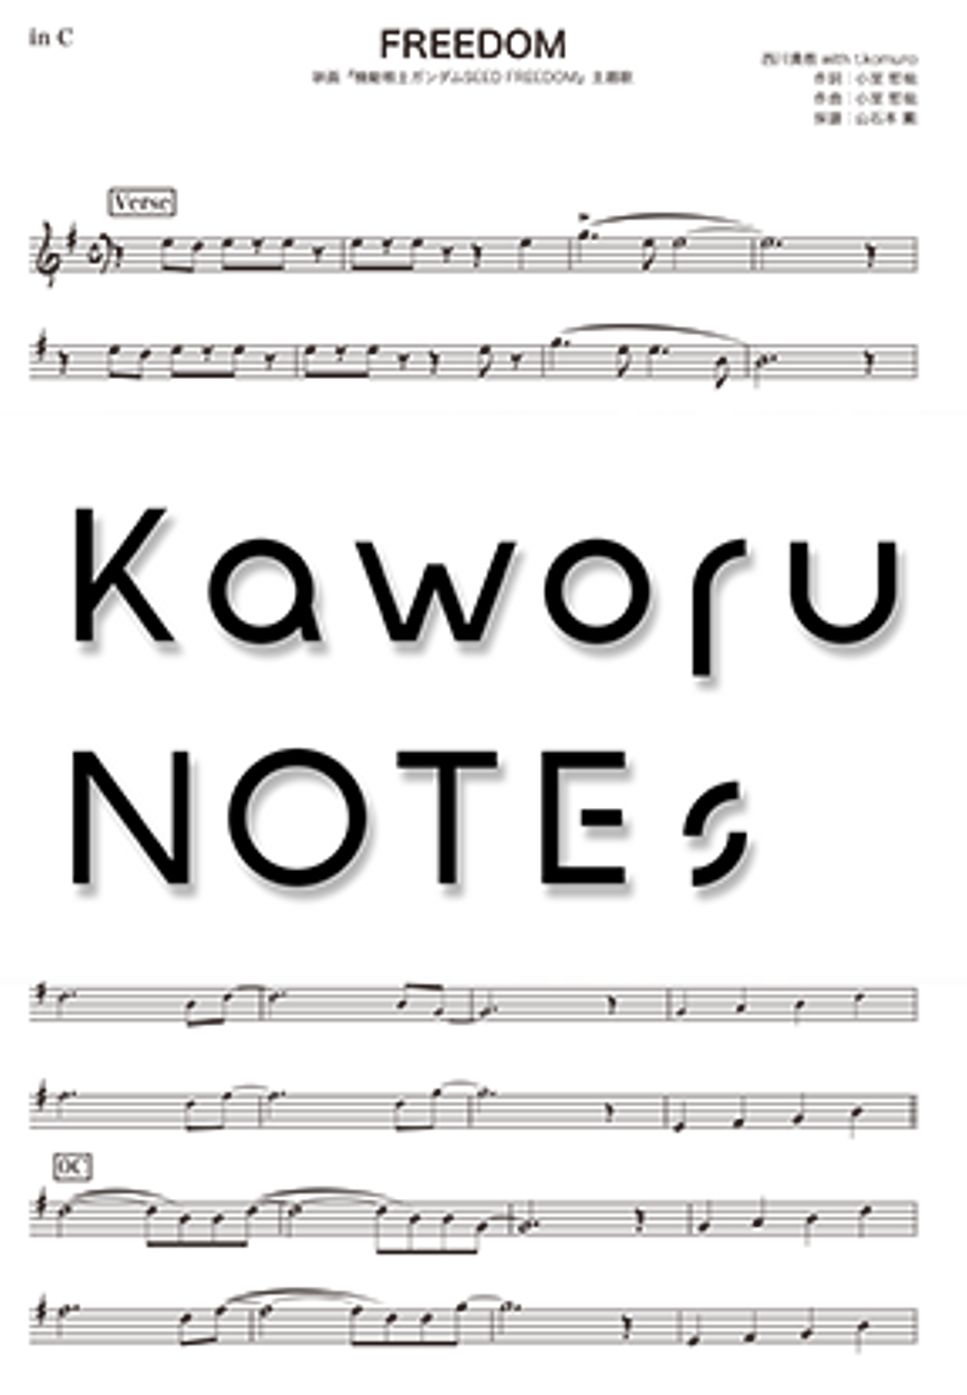 西川貴教 - FREEDOM（in B♭ /映画『機動戦士ガンダムSEED FREEDOM』主題歌） by Kaworu NOTEs